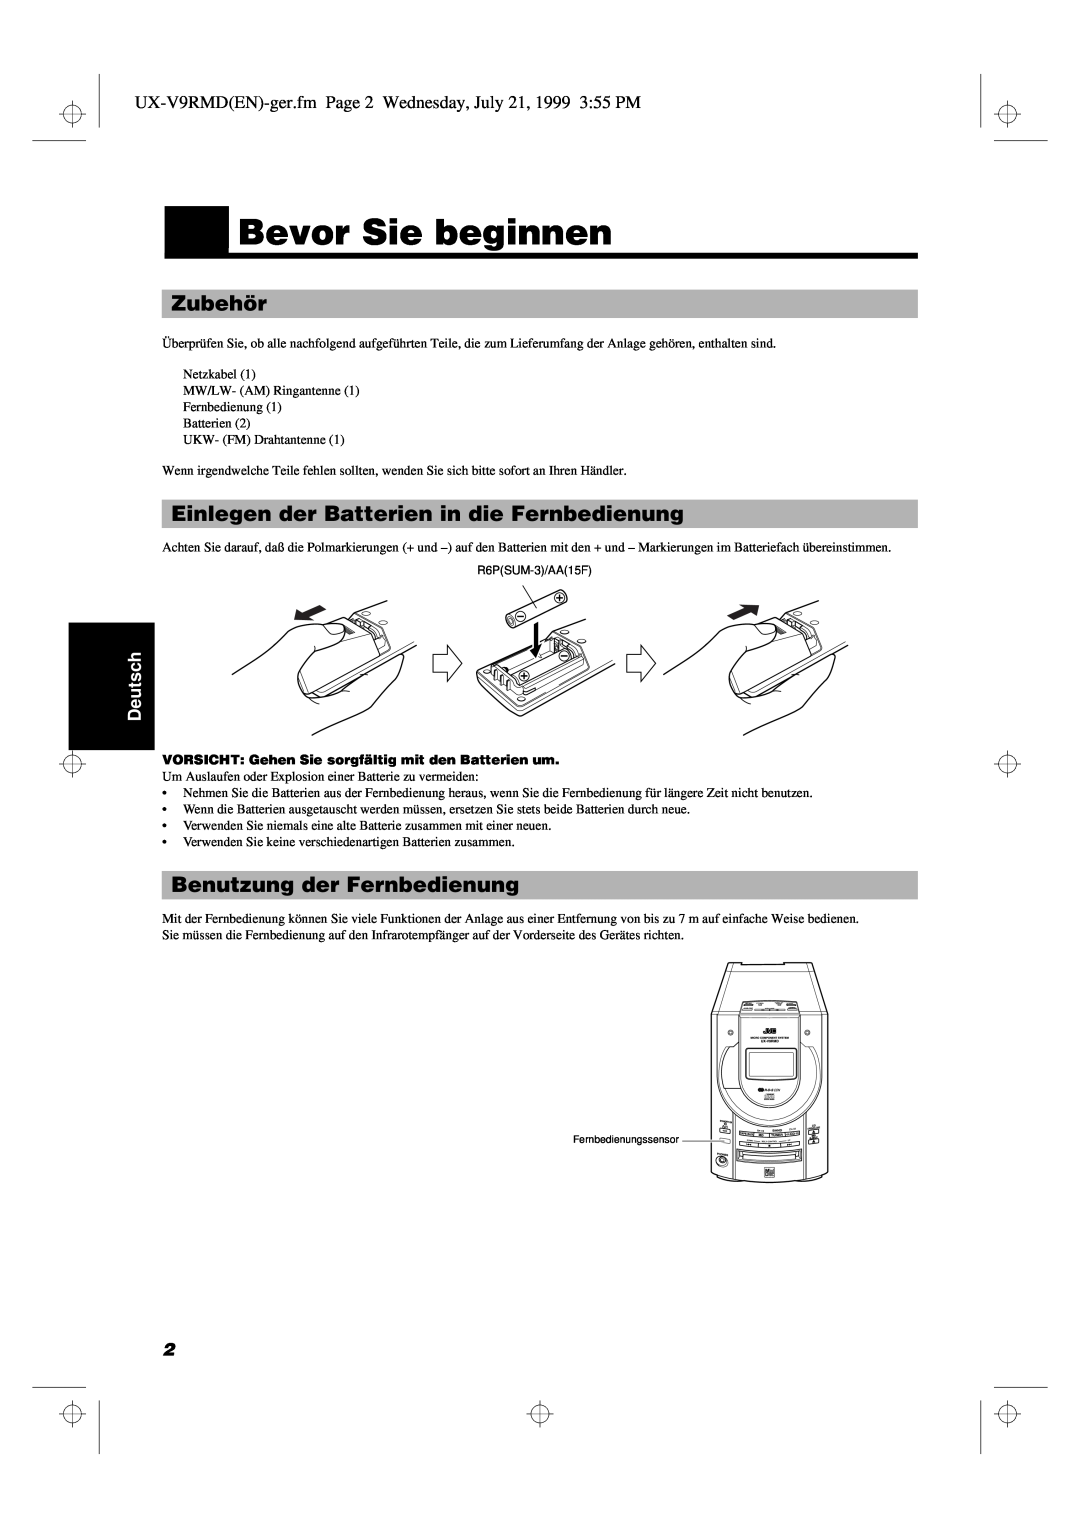 JVC UX-V9RMD manual Bevor Sie beginnen, Zubehör, Einlegen der Batterien in die Fernbedienung, Benutzung der Fernbedienung 